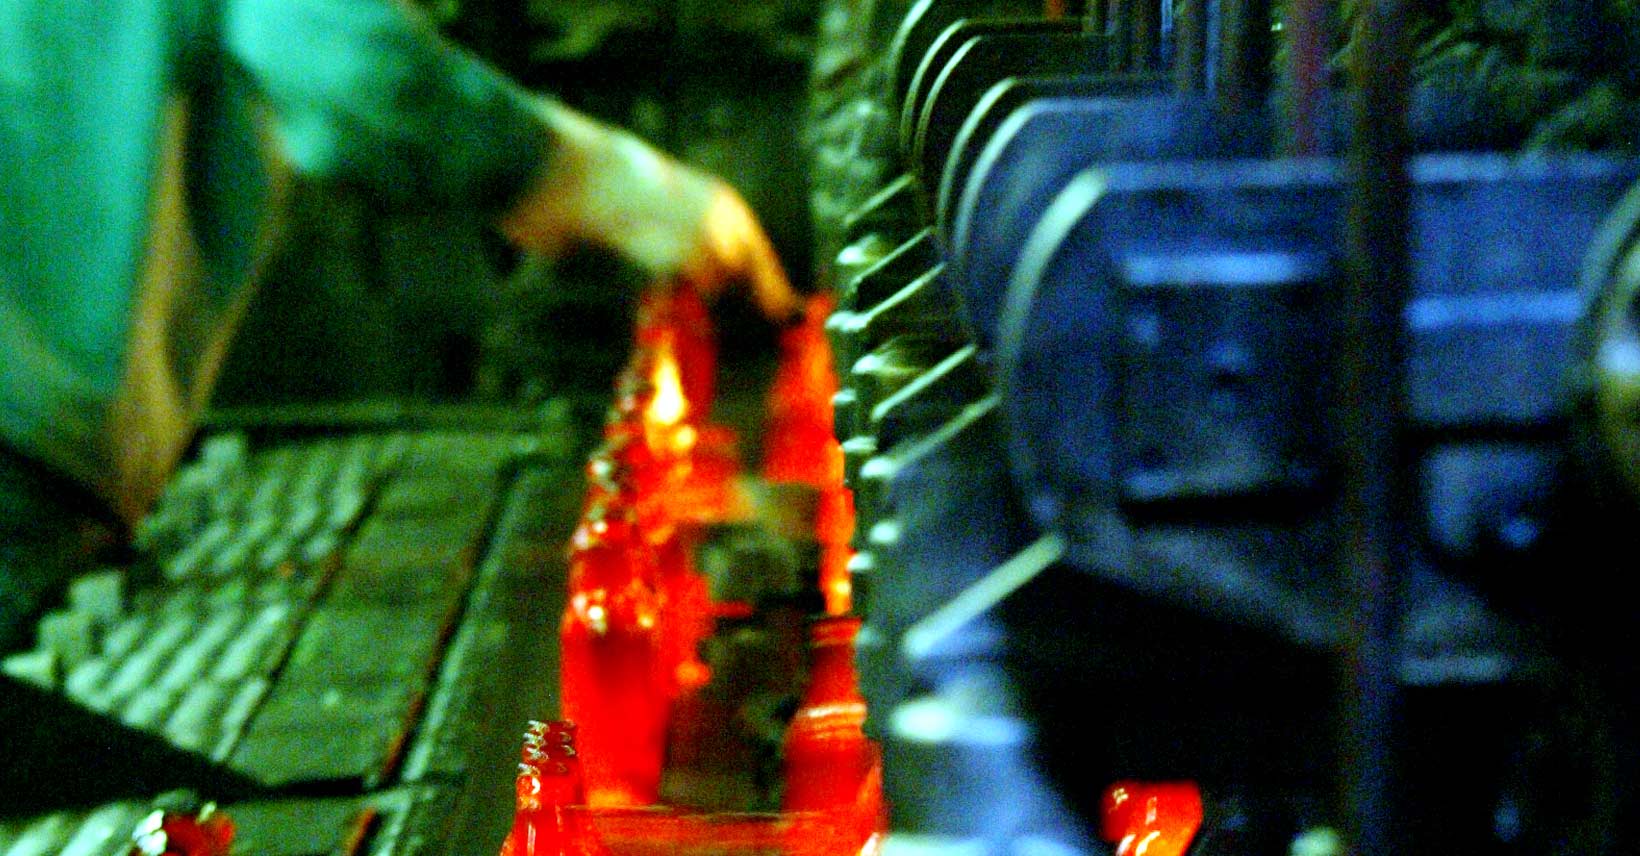 Werknemers glasfabriek staken